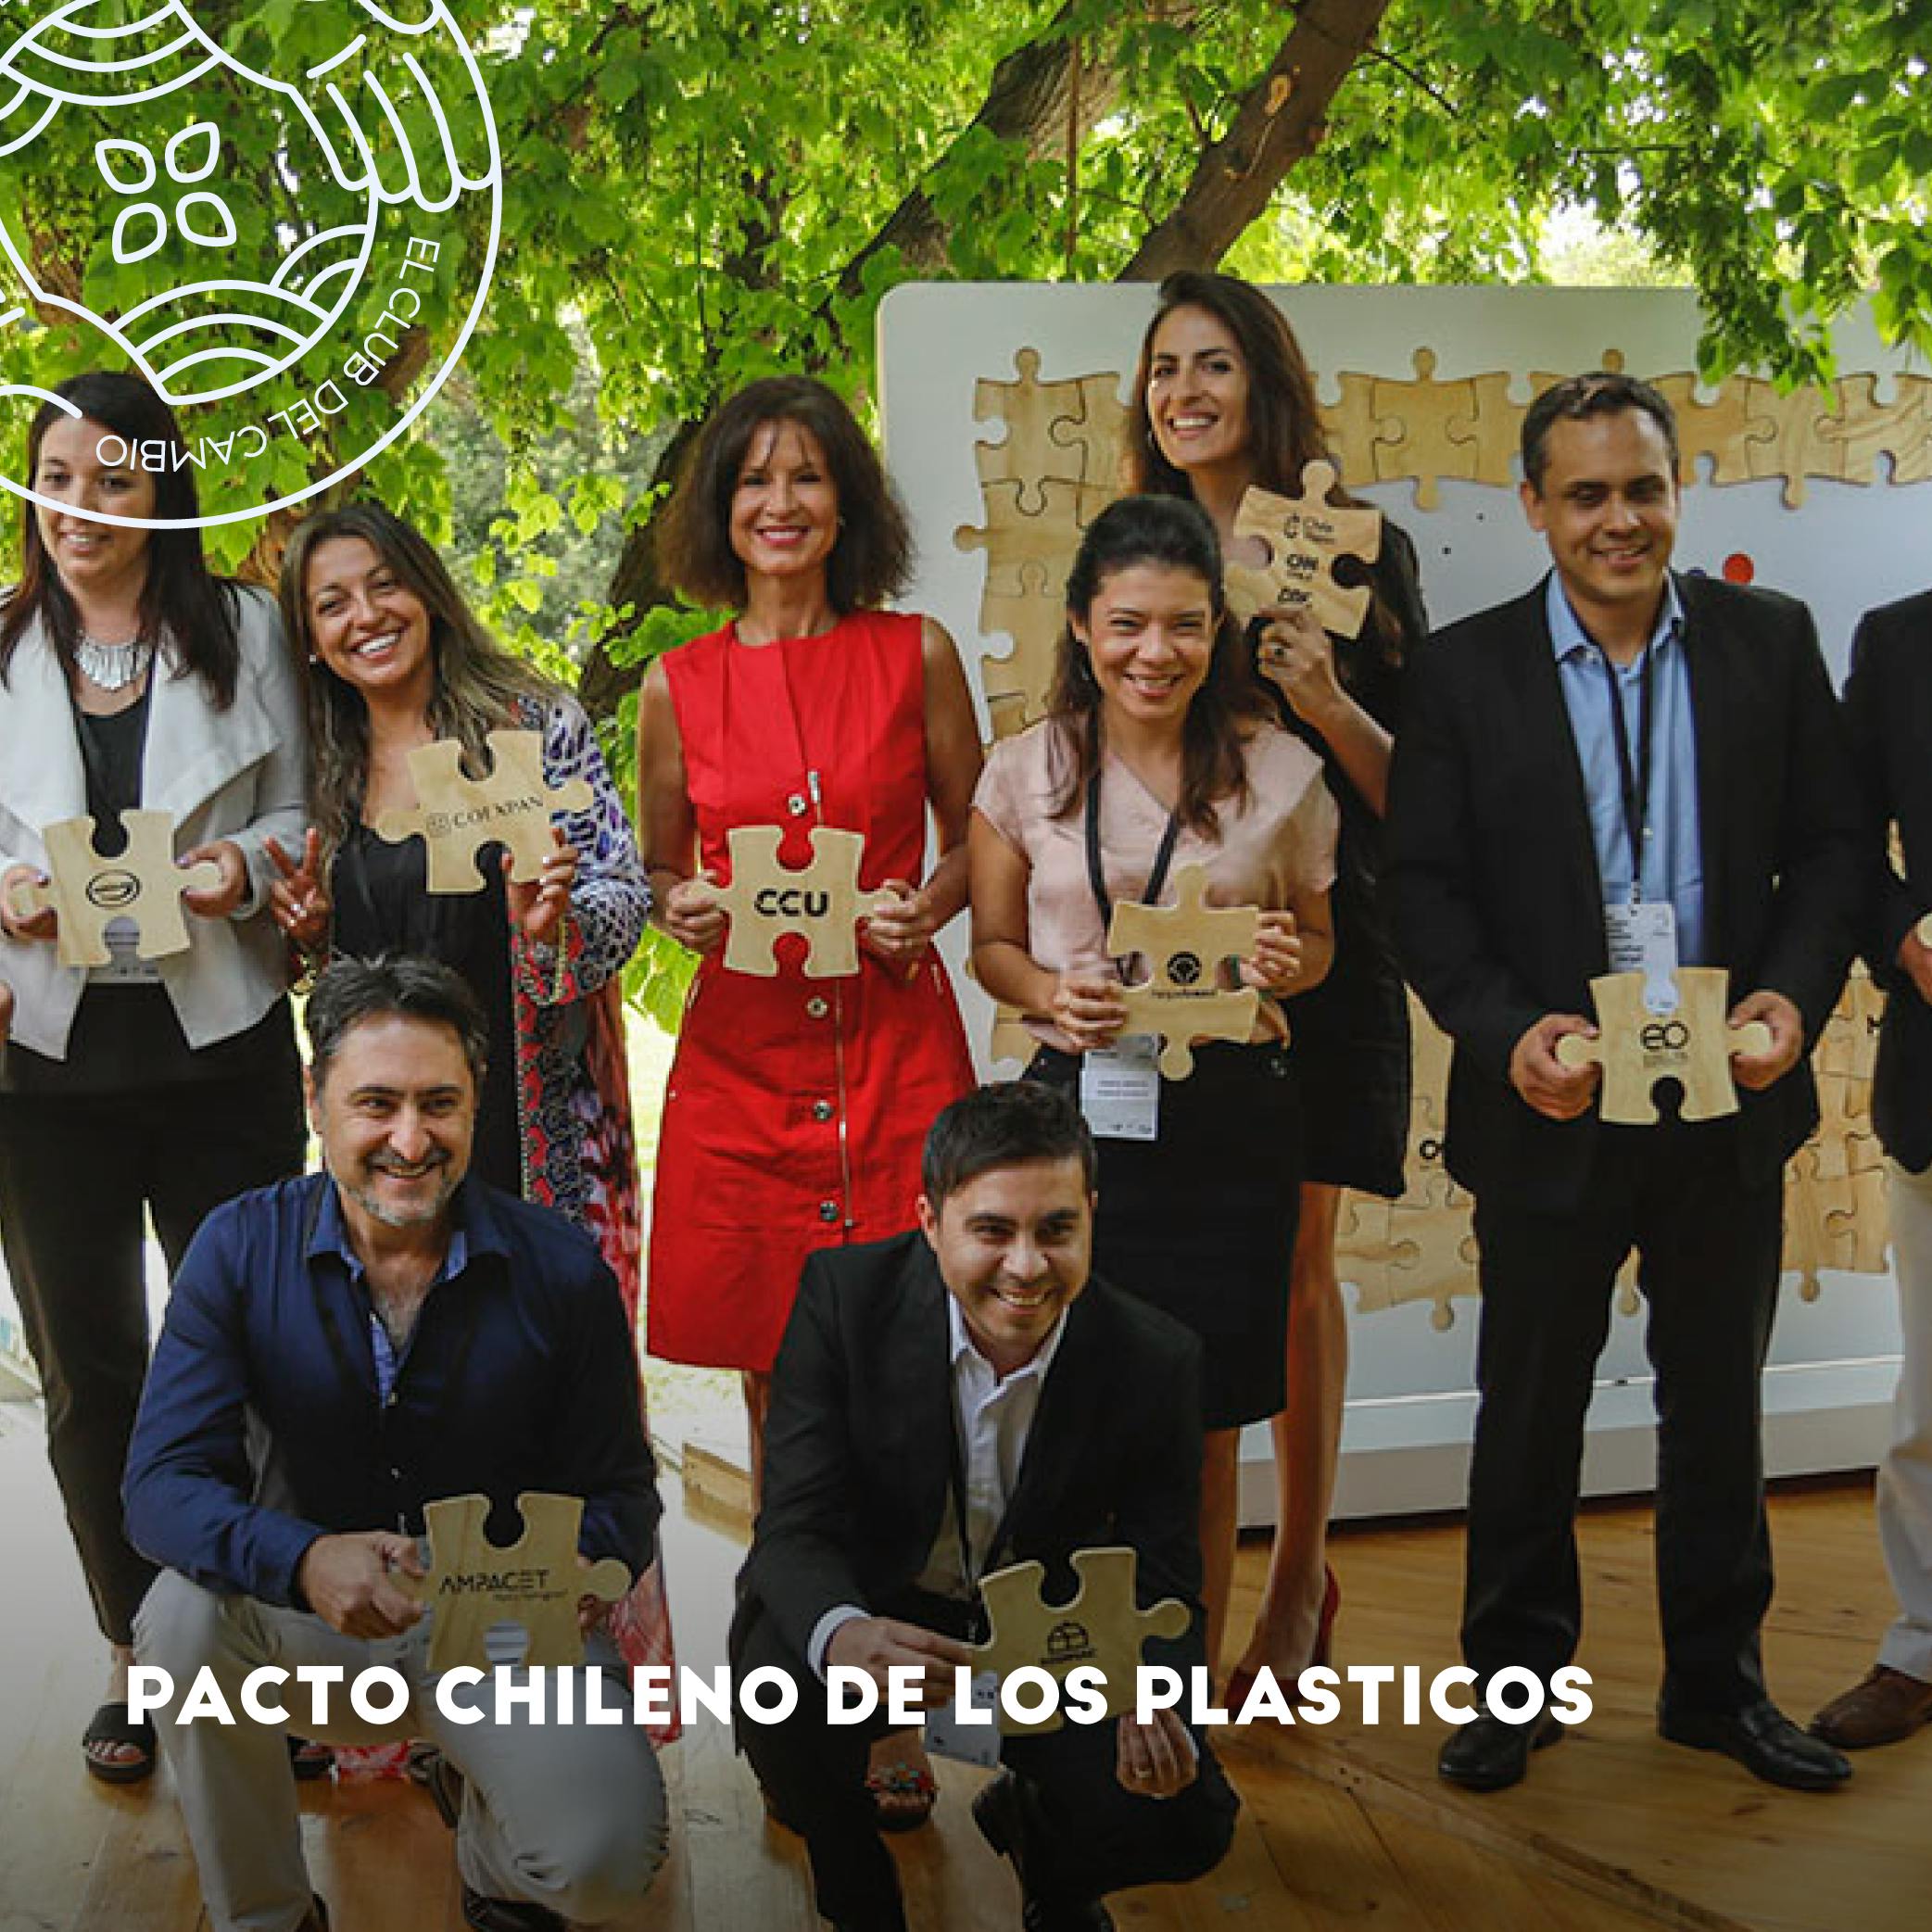 Fundación Chile - Pacto Chileno de los Plásticos